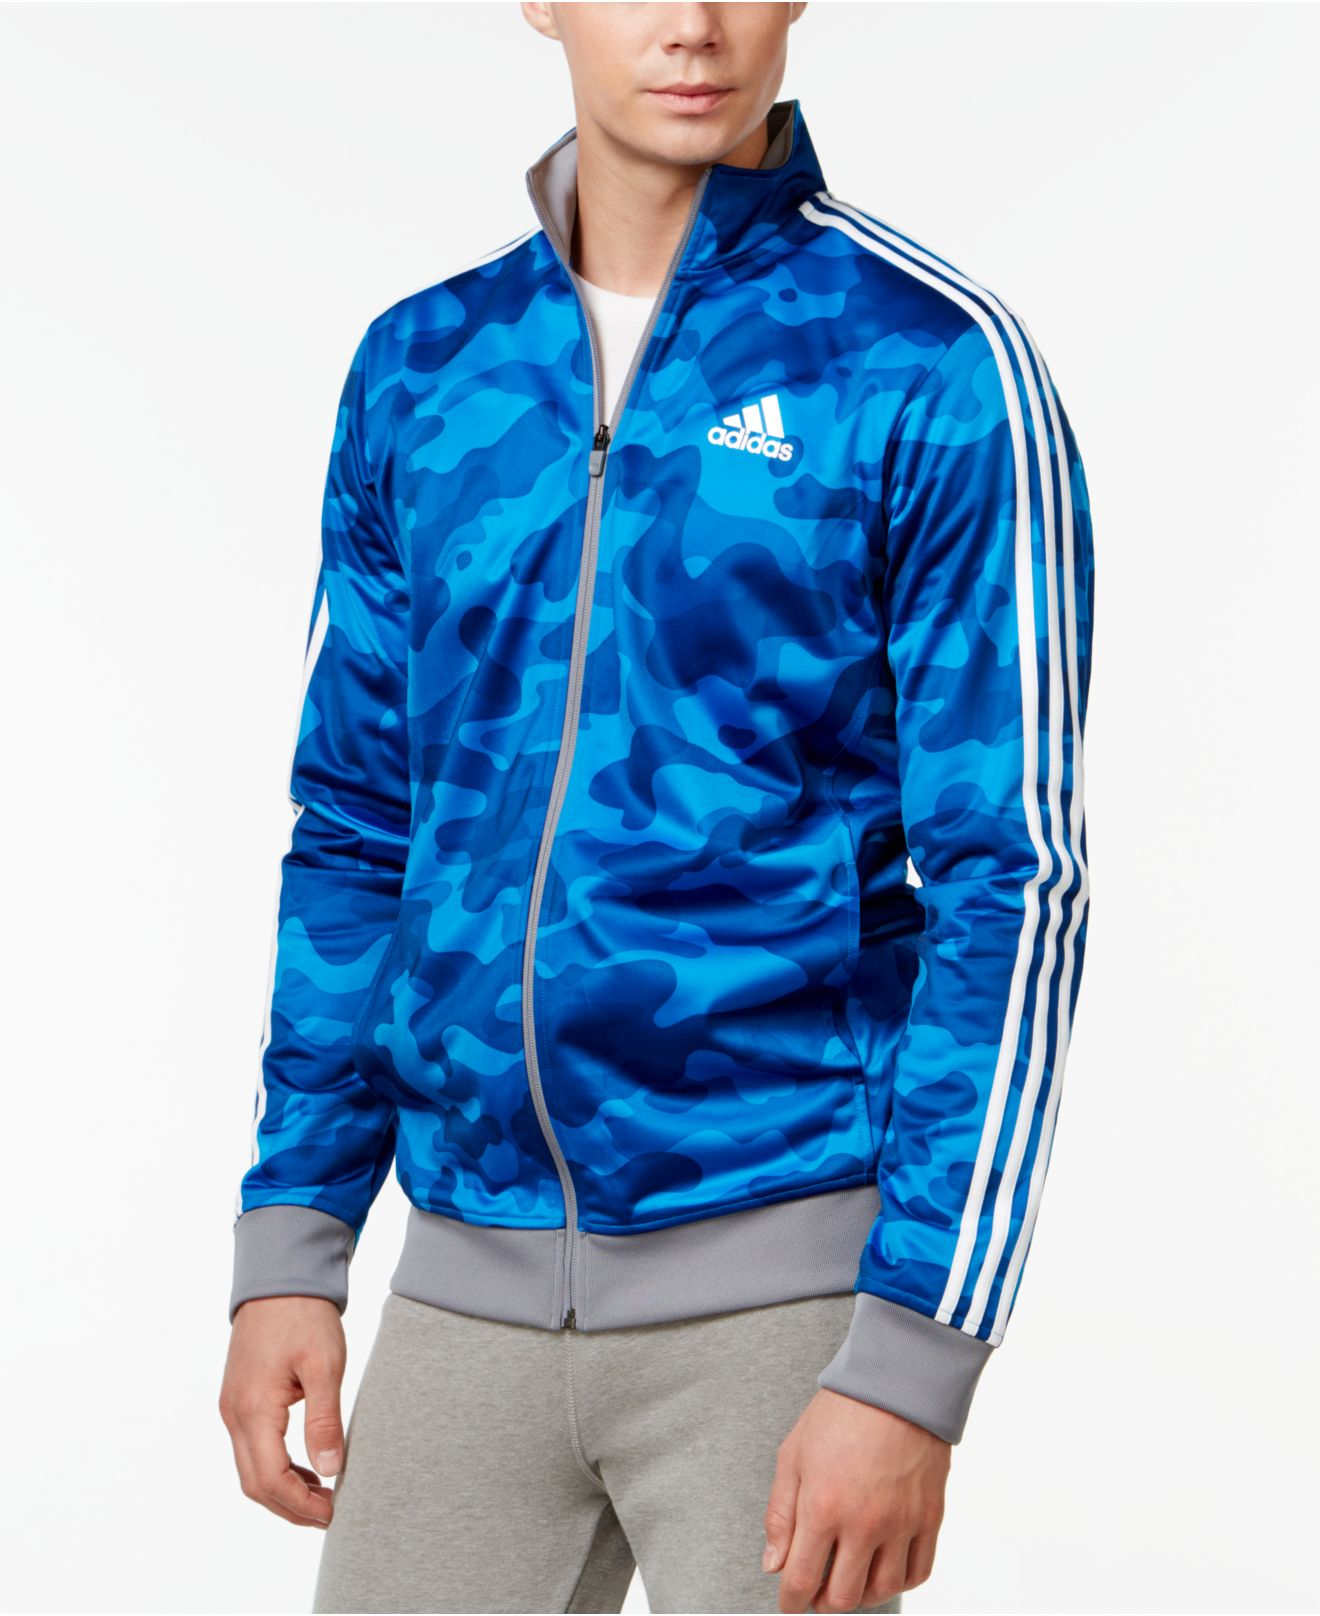 Klappe udendørs aktivitet adidas Originals Men's Camo Print Track Jacket in Blue for Men - Lyst